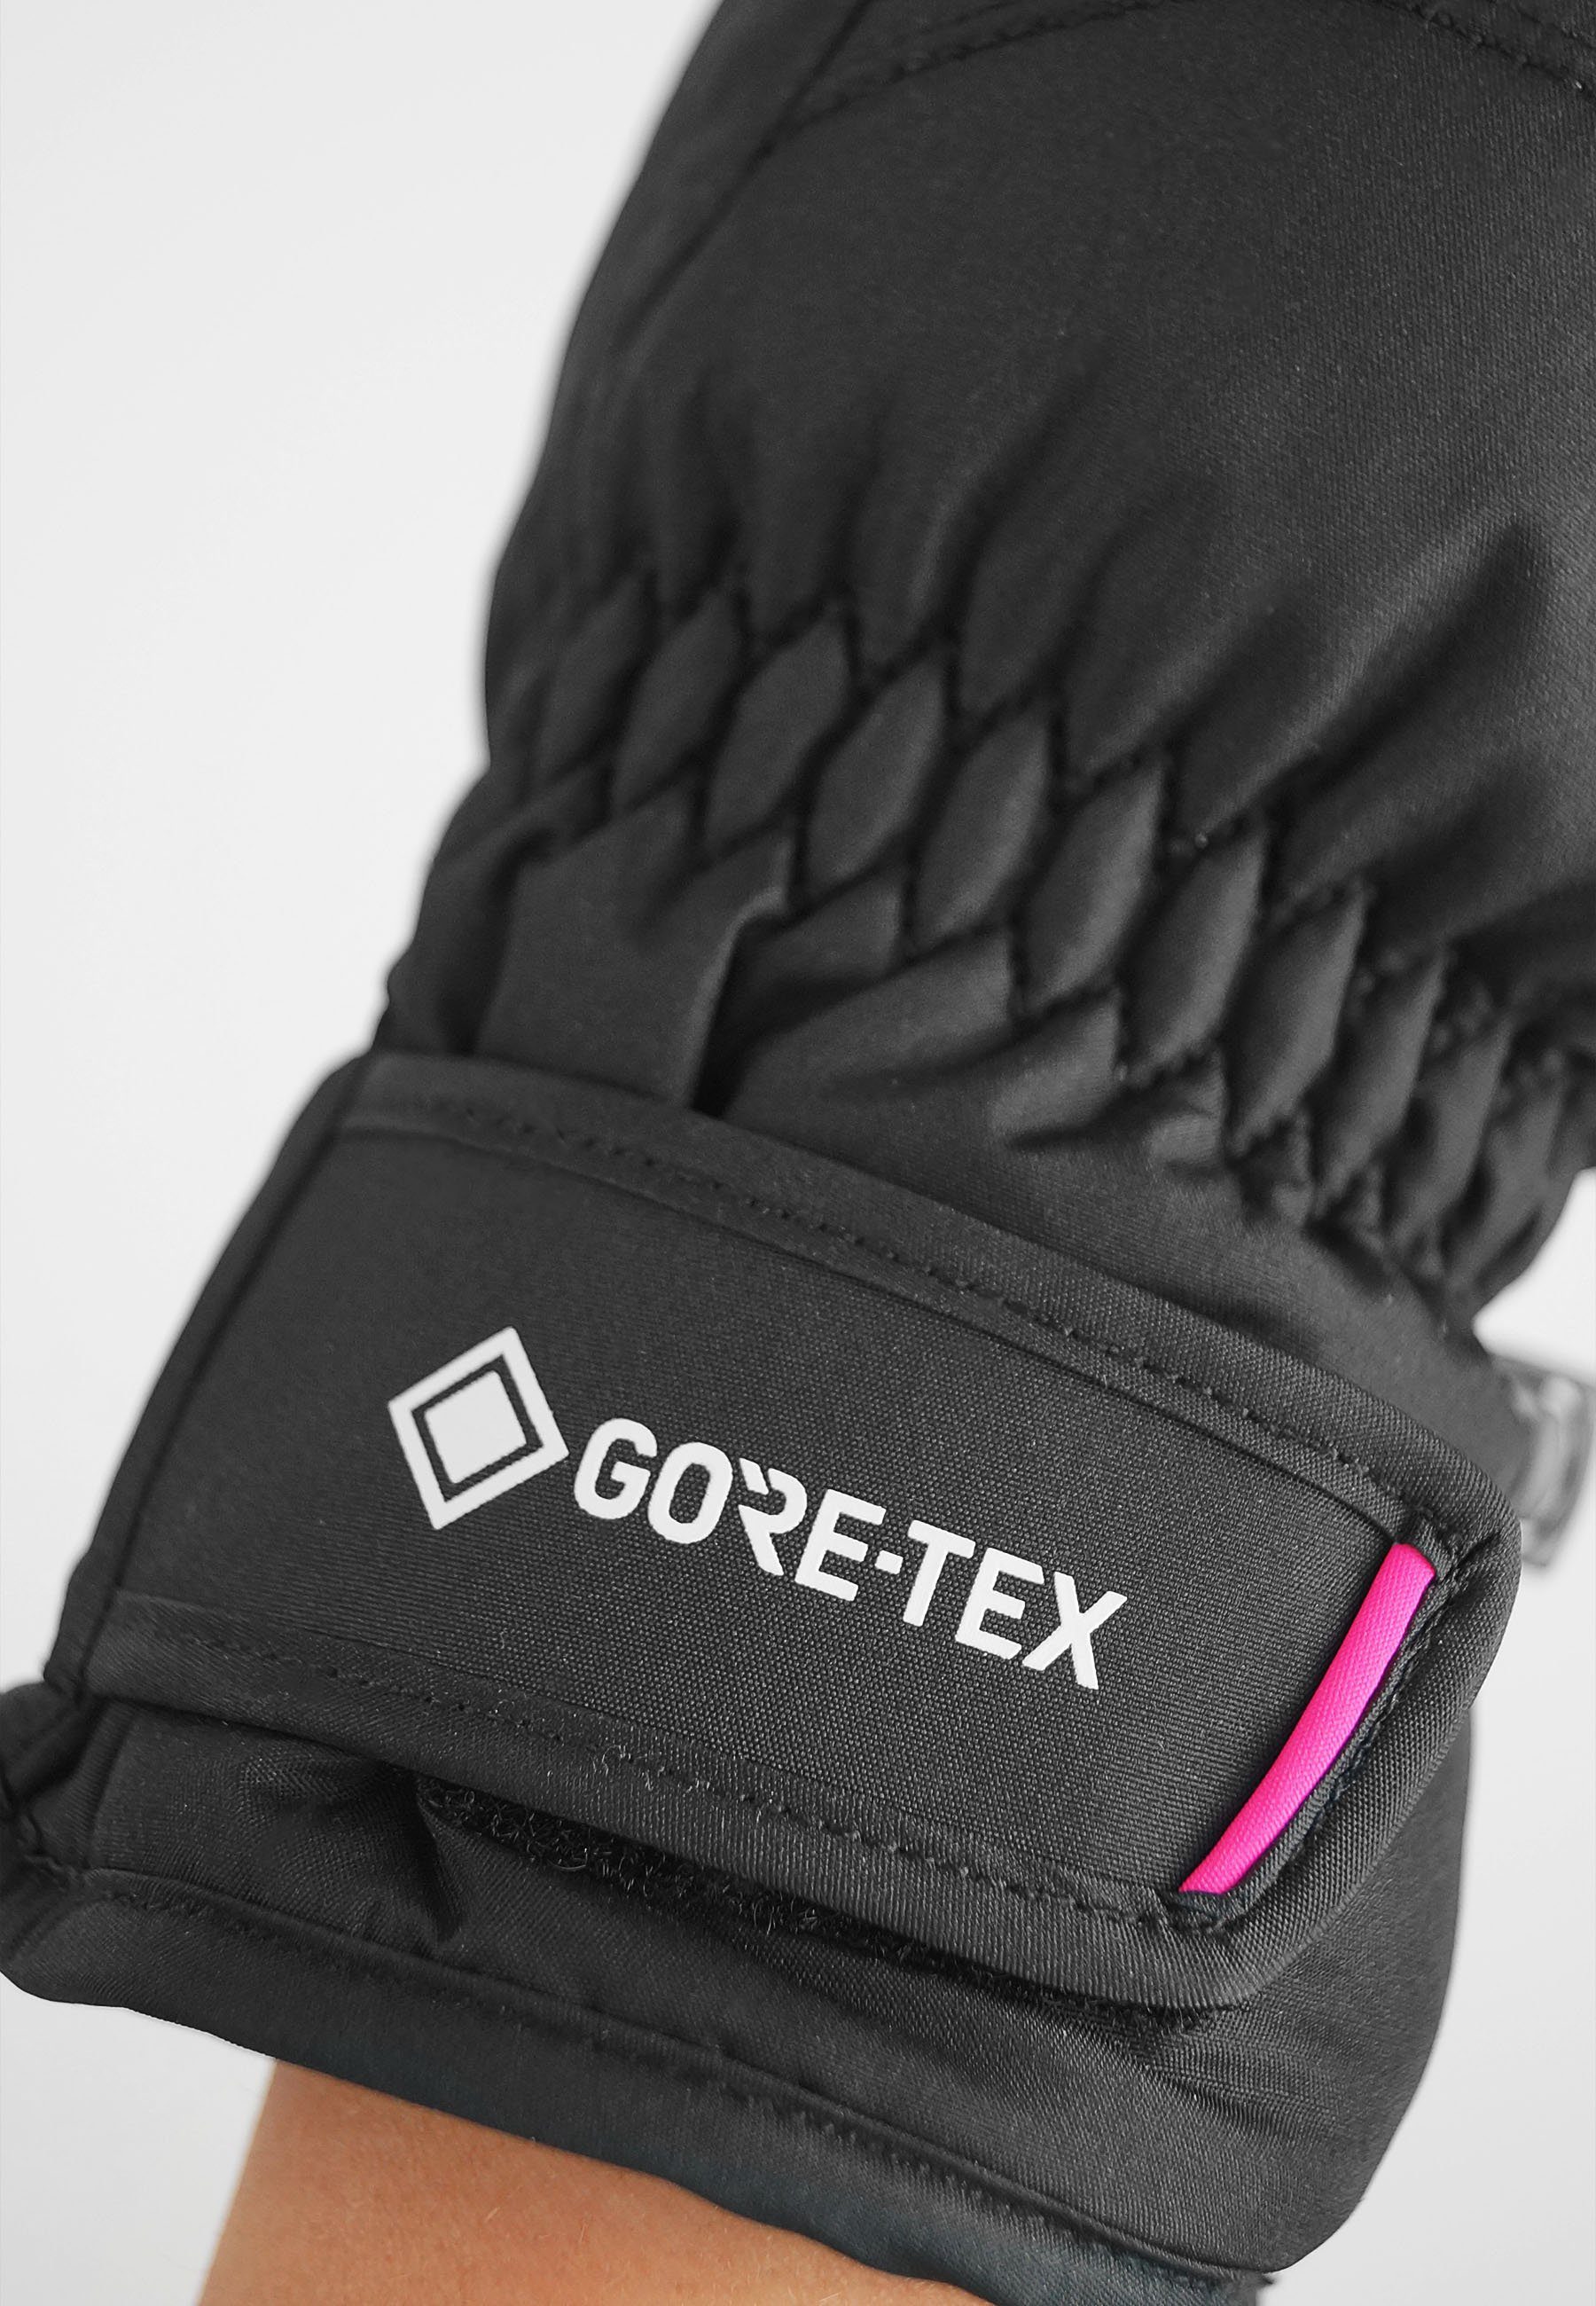 Reusch Skihandschuhe mit dunkelgrau-pink wasserdichter Funktionsmembran GORE-TEX Teddy